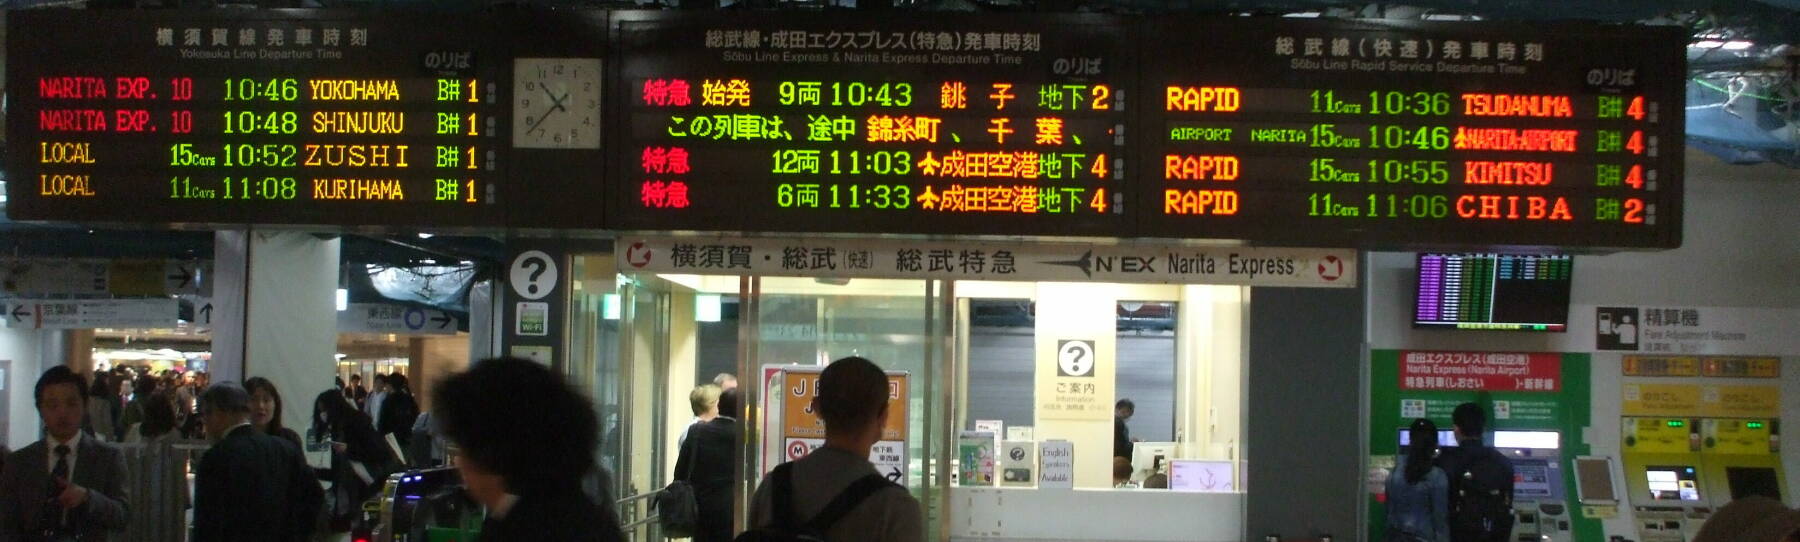 Schedule board in Tōkyō Central train station.